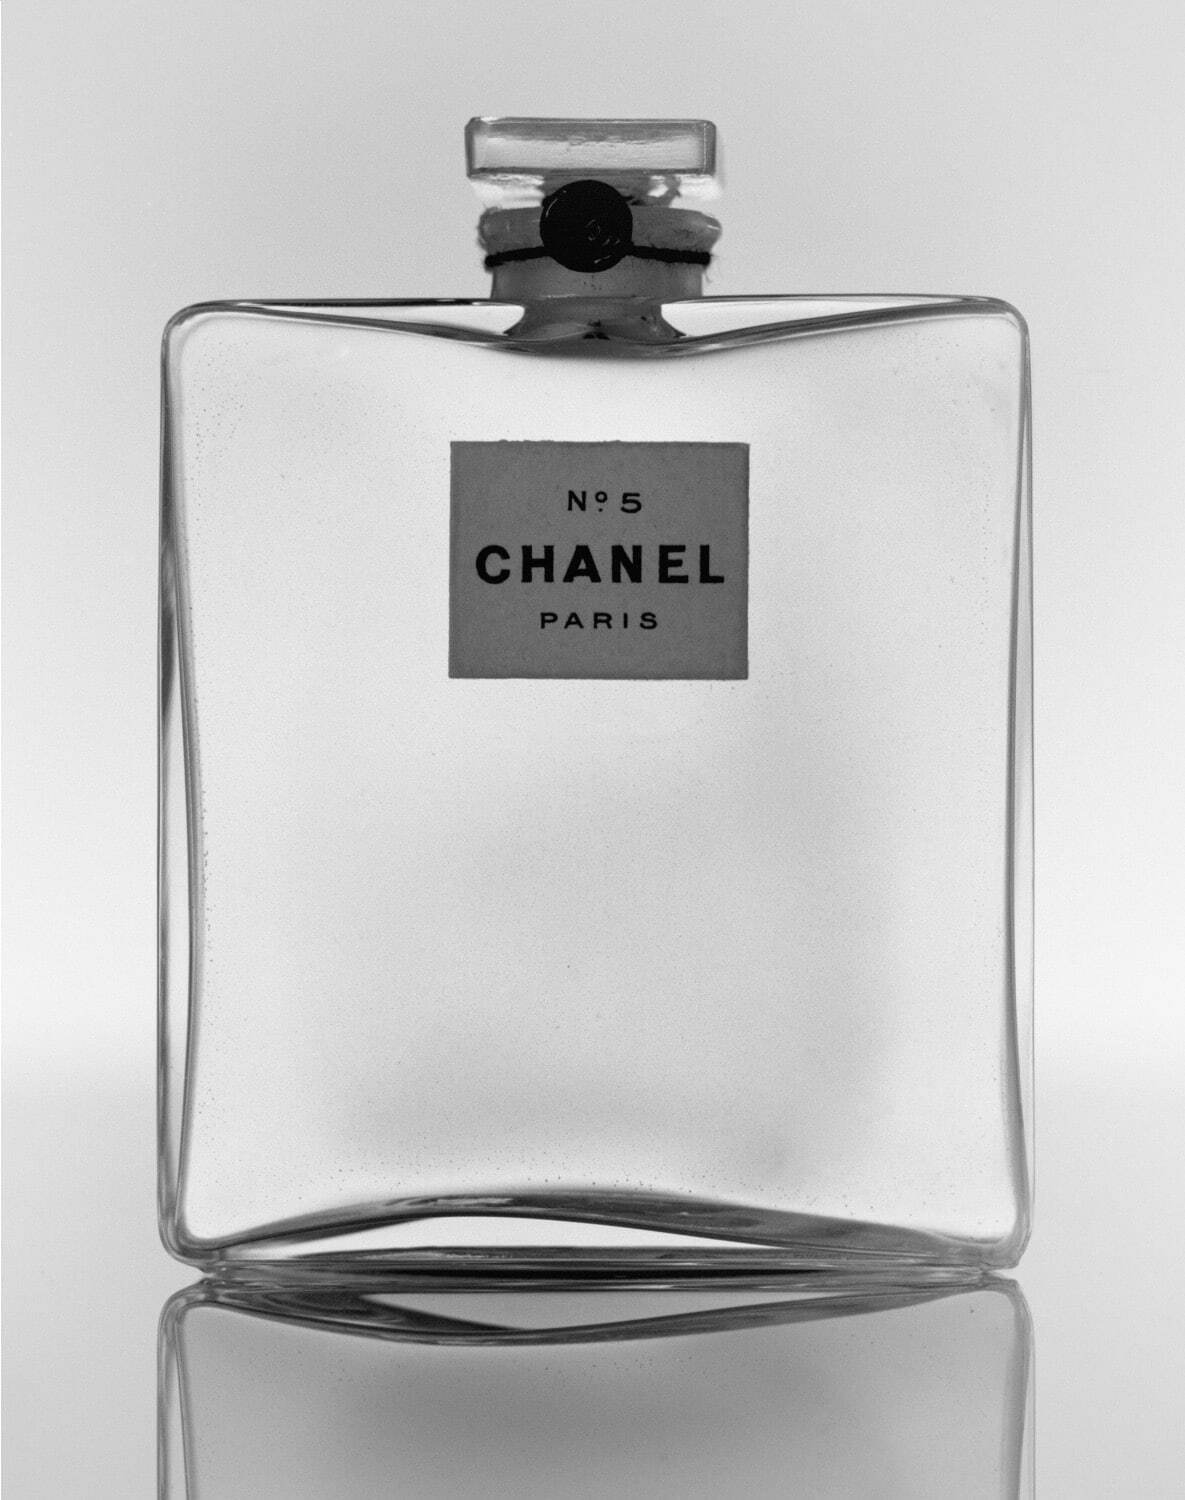 ガブリエル・シャネル　香水「シャネル N°5」
1921年　ガラス、木綿糸、封蝋、紙　パリ、パトリモアンヌ・シャネル
©Julien T. Hamon